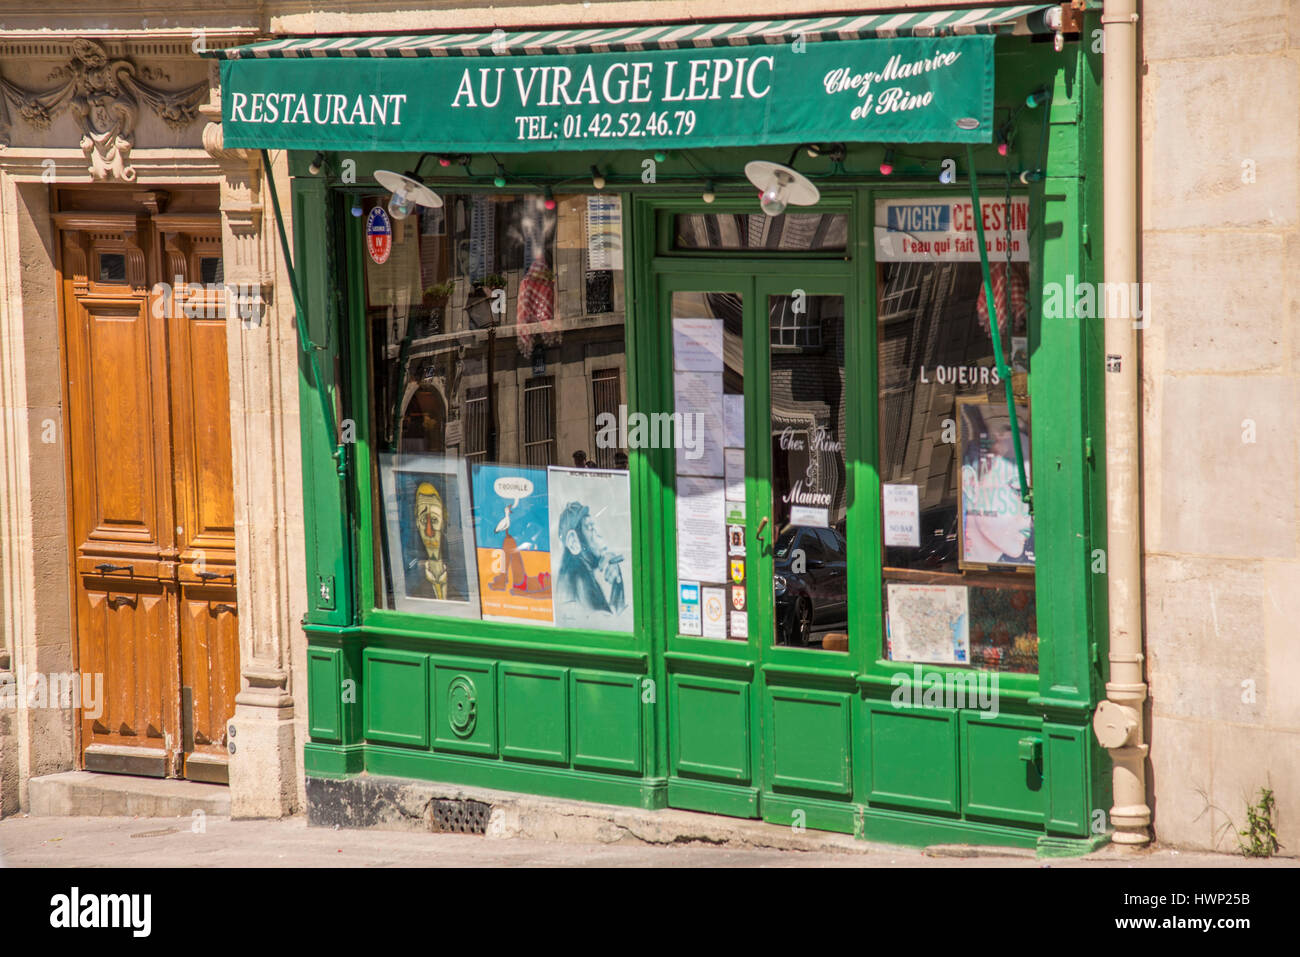 Die grün lackierten Vorderseite des Au Virage Lepic Restaurant serviert traditionelle französische Küche befindet sich auf Rue Lepic in Montmartre, Paris Frankreich. Stockfoto